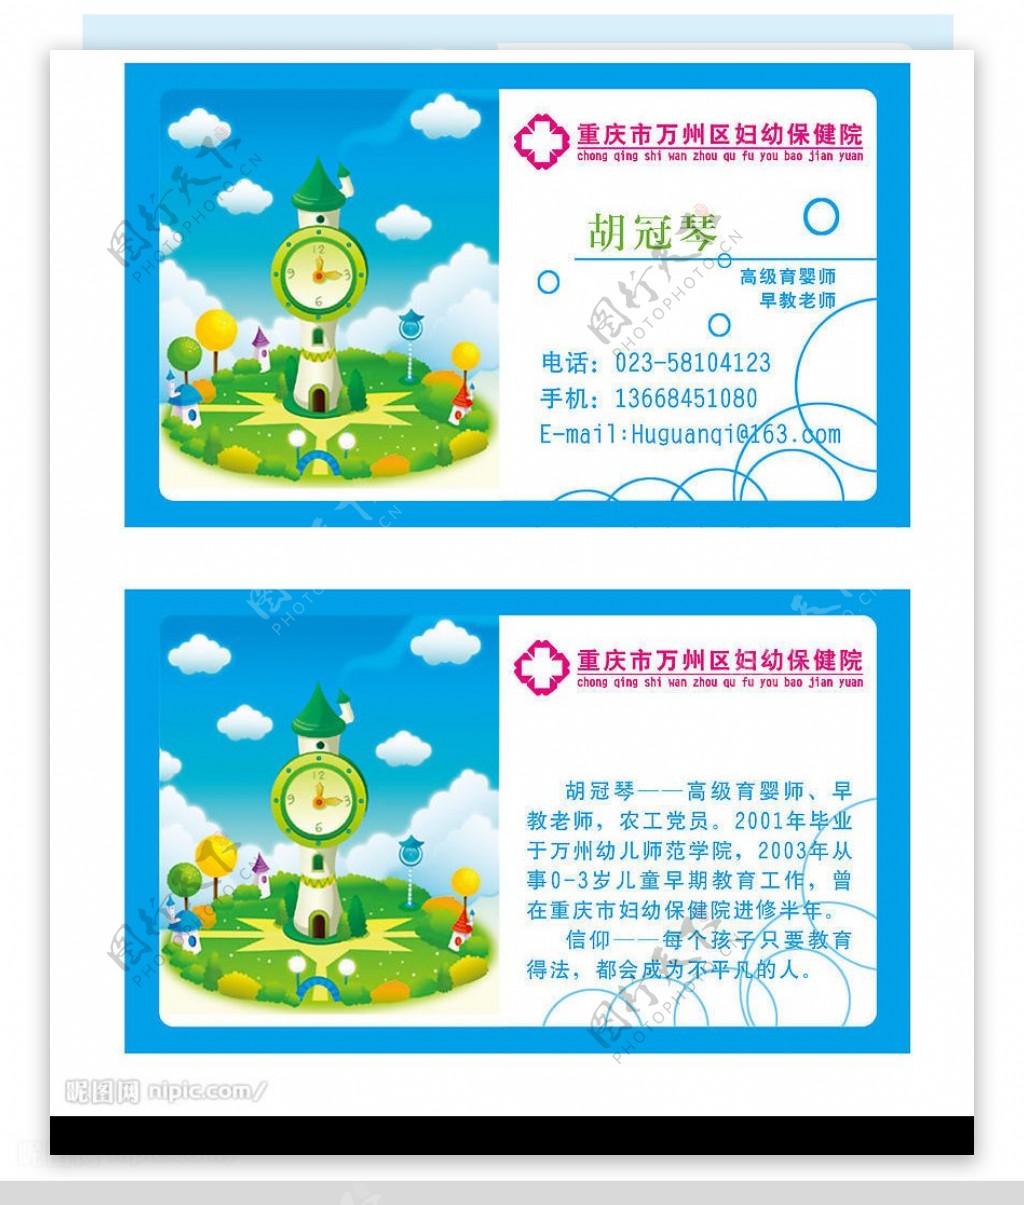 重庆市万州区妇幼保健院名片胡冠琴图片